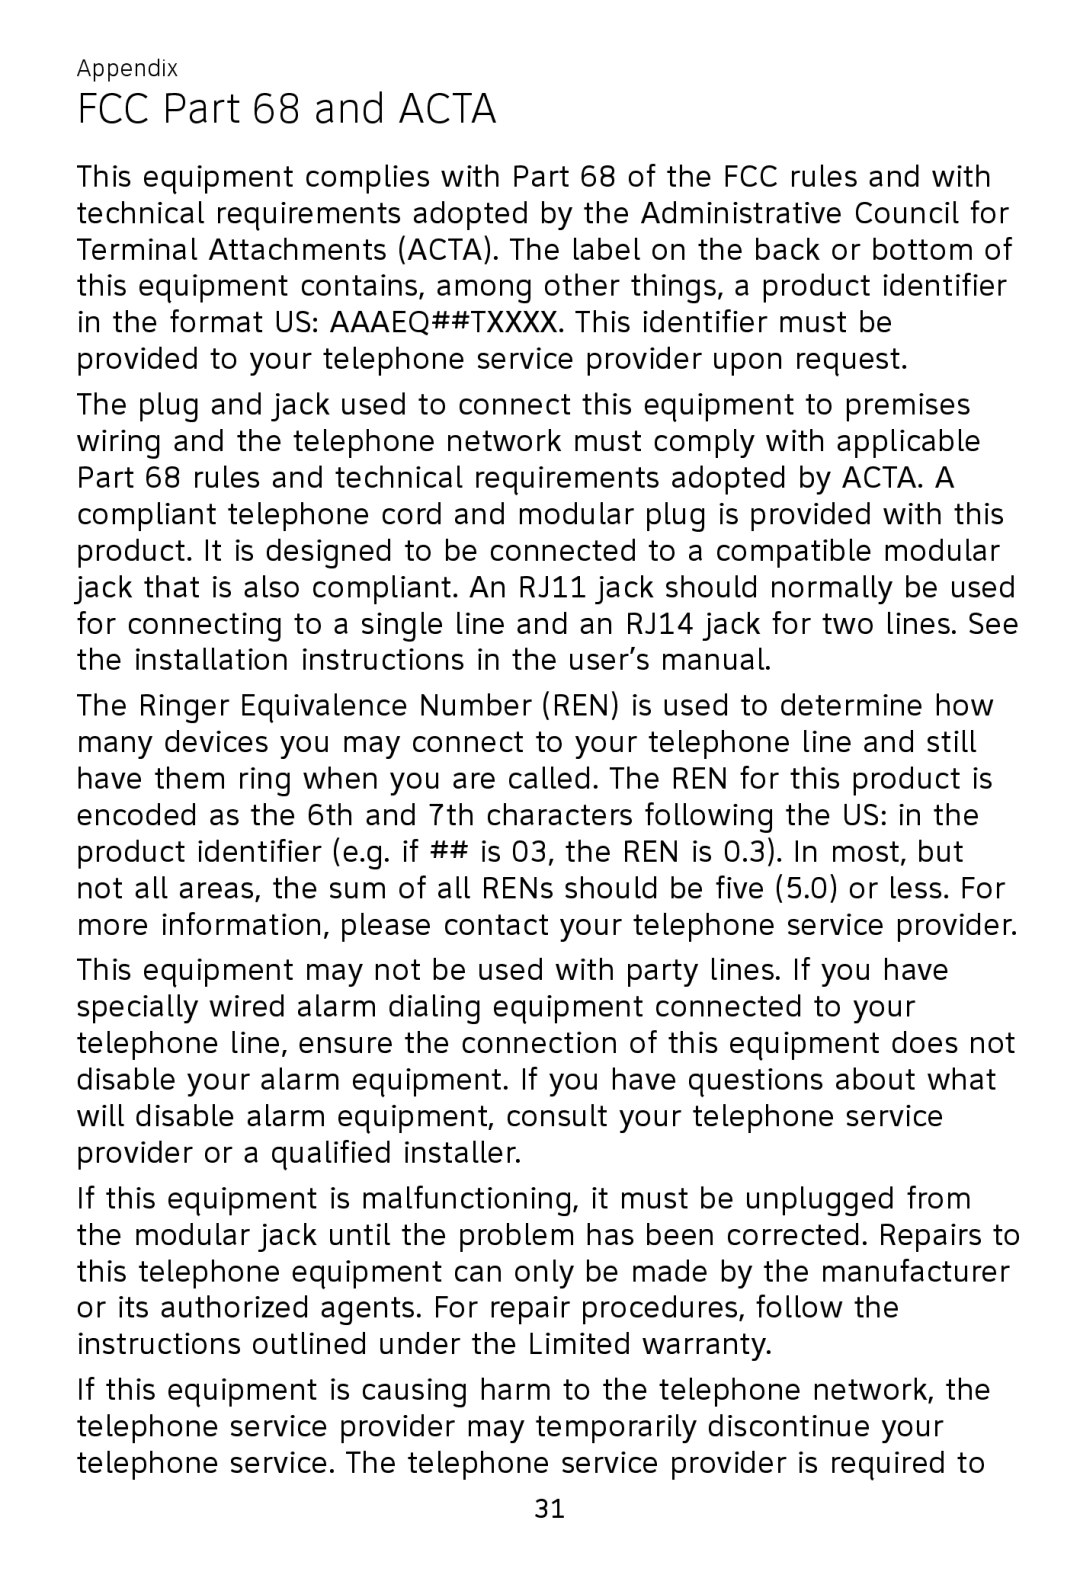 AT&T TL7700 user manual FCC Part 68 and ACTA 